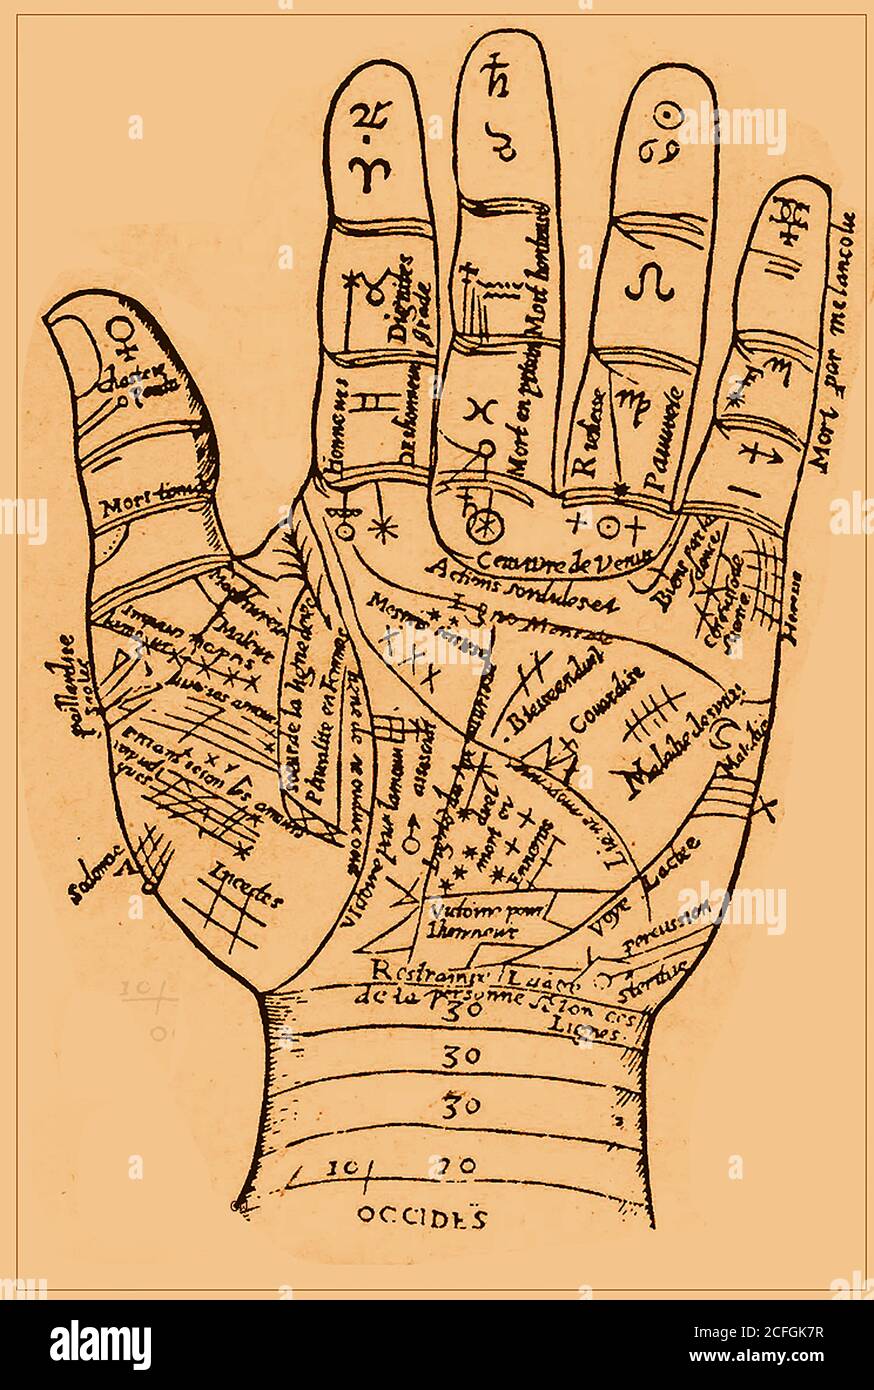 Palmistry / Chiromancy / Cheiromancy / Palm Reading / Chirology - ein altes Horoskop, das die Linien der Hand, ihre Bedeutungen und ihre Beziehung zu den Tierkreiszeichen zeigt. Stockfoto